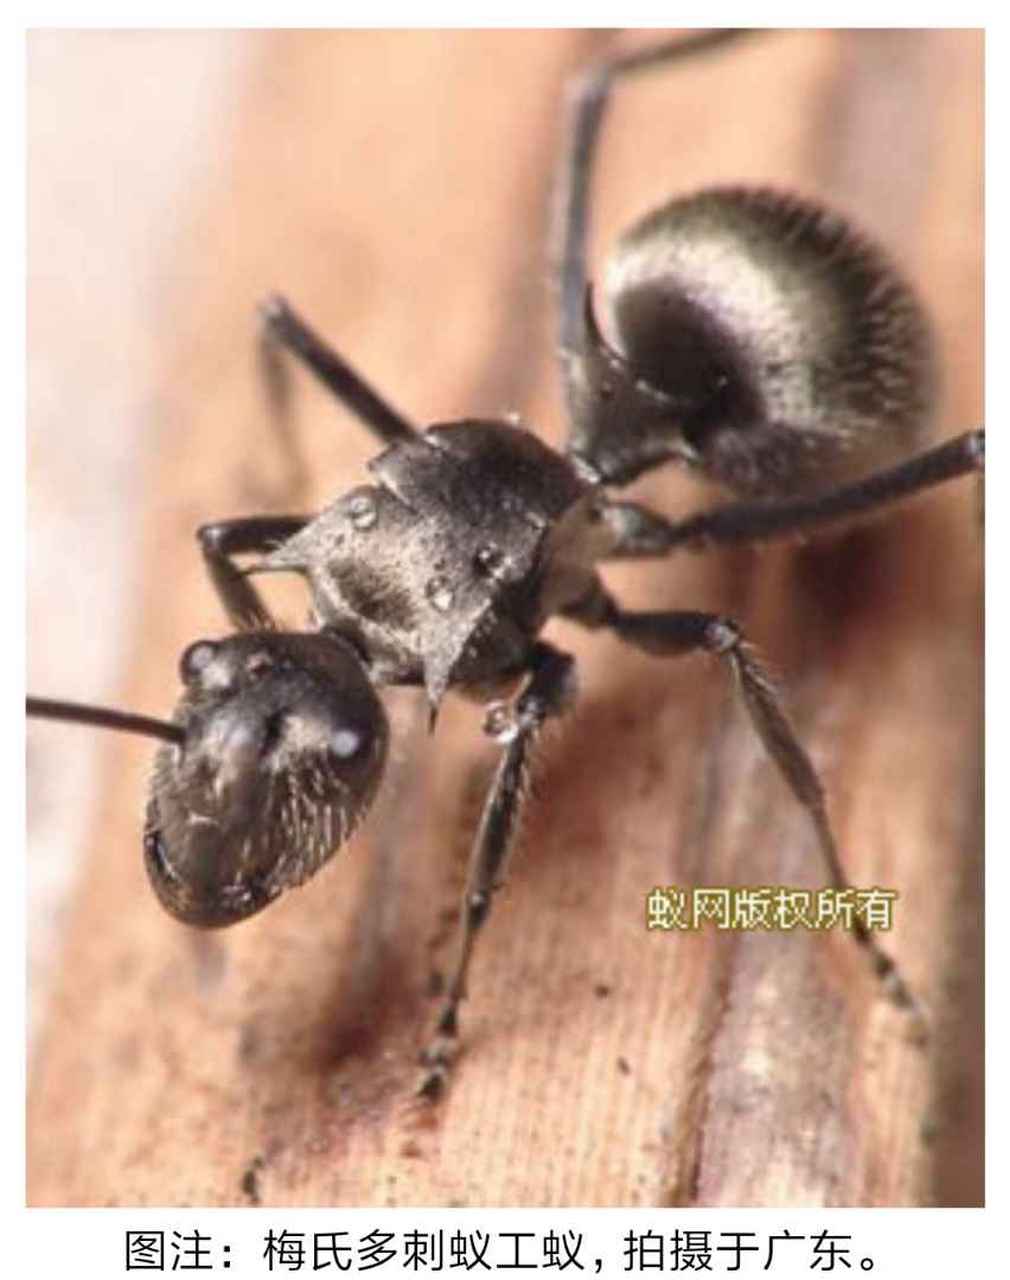 【种草大会】 南方常见蚂蚁,身上有刺,不同同于以往蚂蚁 这种蚂蚁名叫